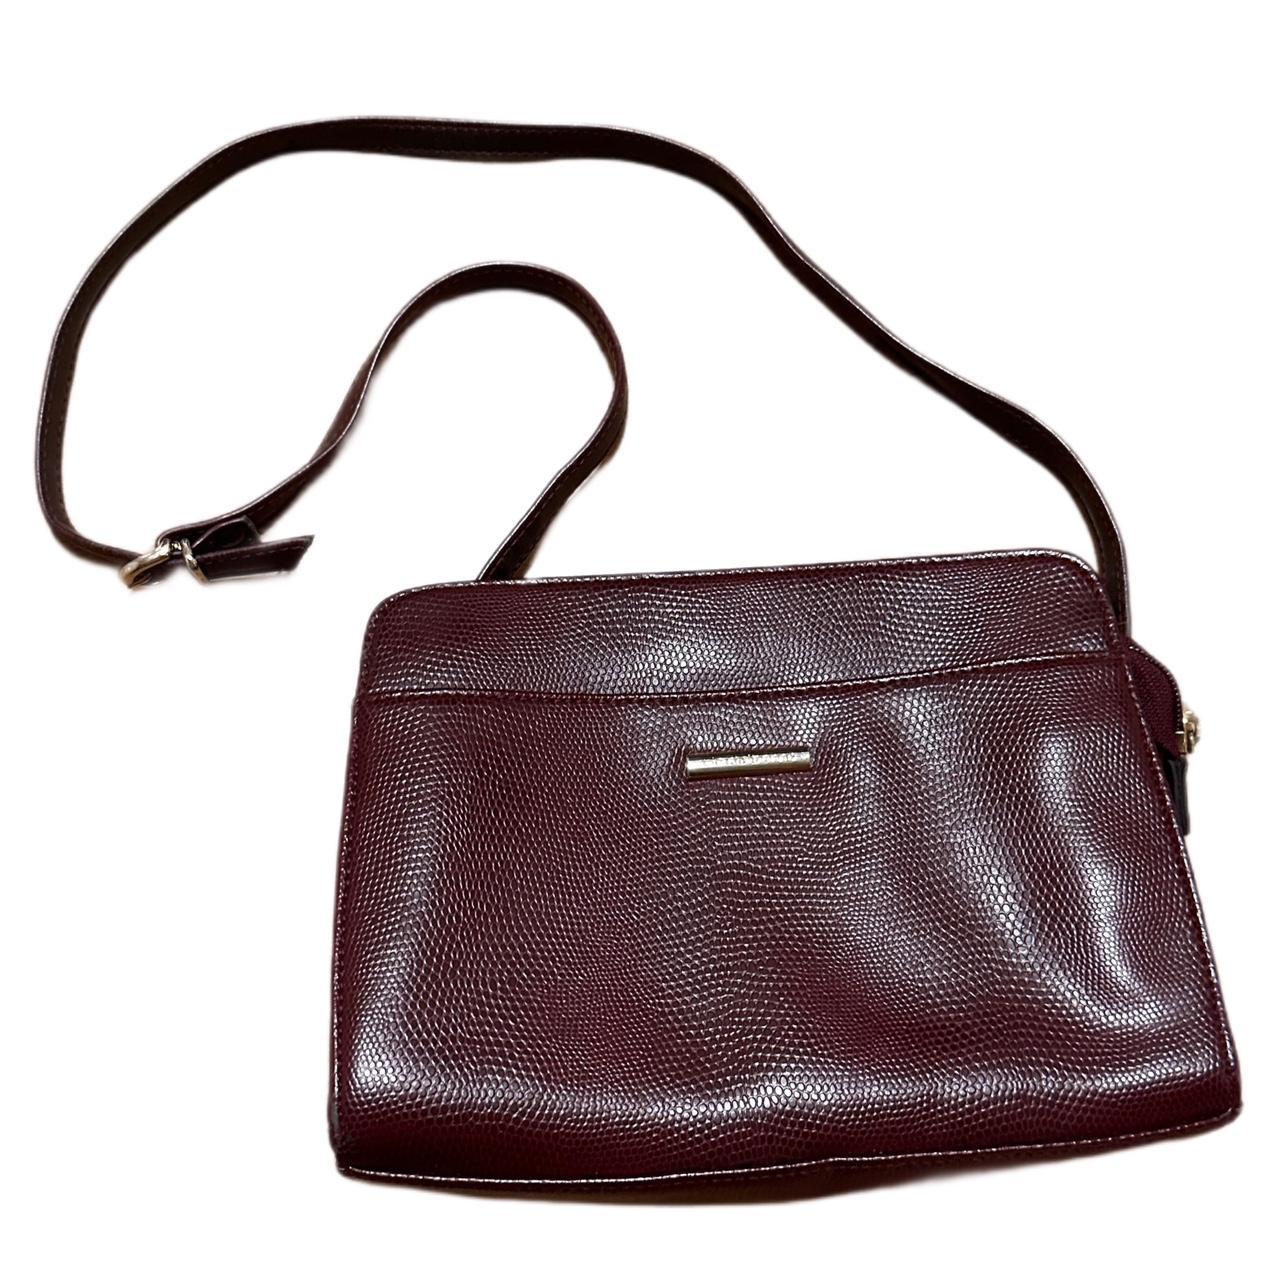 Esprit Small Burgundy Red Crossbody Bucket Handbag Purse Faux Leather | eBay